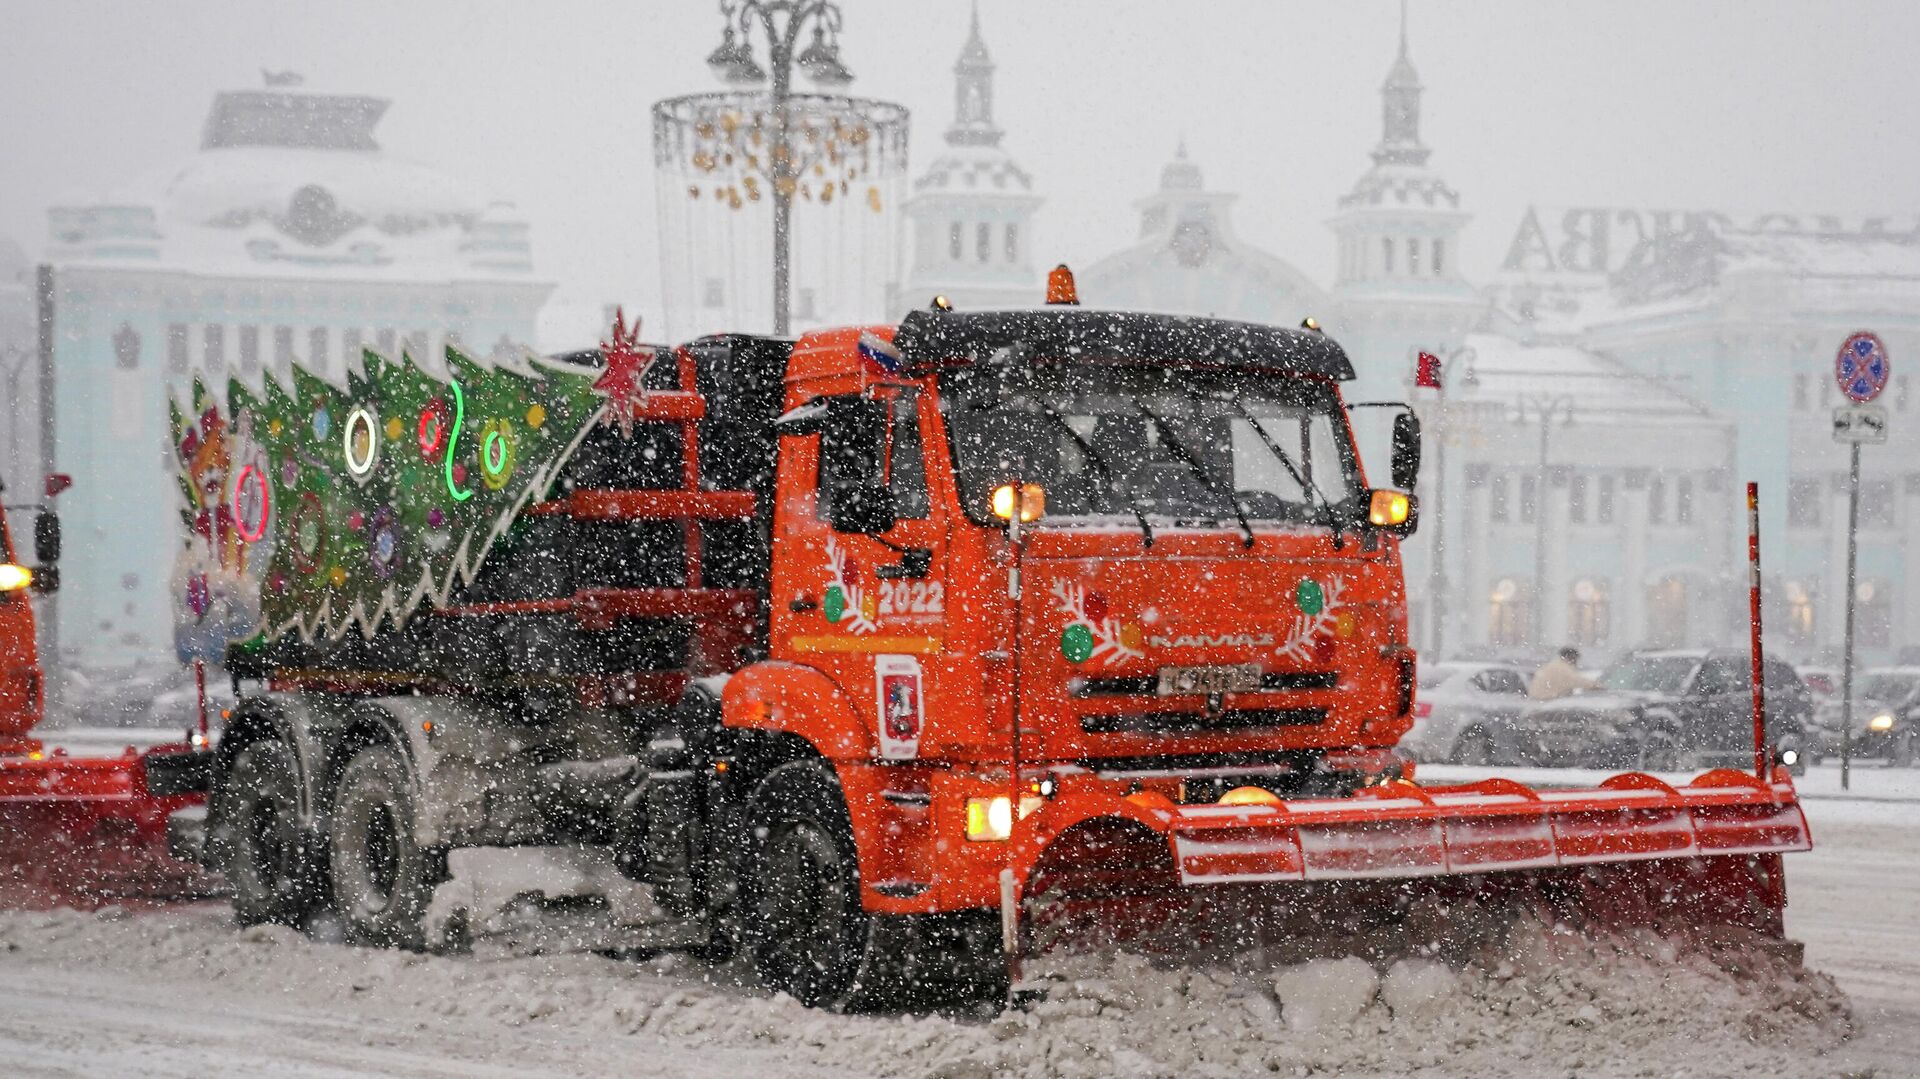 Городские службы оперативно устраняют последствия сильного снегопада, пришедшего в Москву во вторник и в среду. По данным метеорологов, всего в столице за эти дни выпало 15% месячной нормы осадков. Прирост свежего снега составил до 6 сантиметров, уточнили в комплексе городского хозяйства Москвы. Наибольшее количество осадков было зафиксировано в центре, на севере, северо-востоке, юго-востоке и юго-западе столицы. - РИА Новости, 1920, 07.01.2022